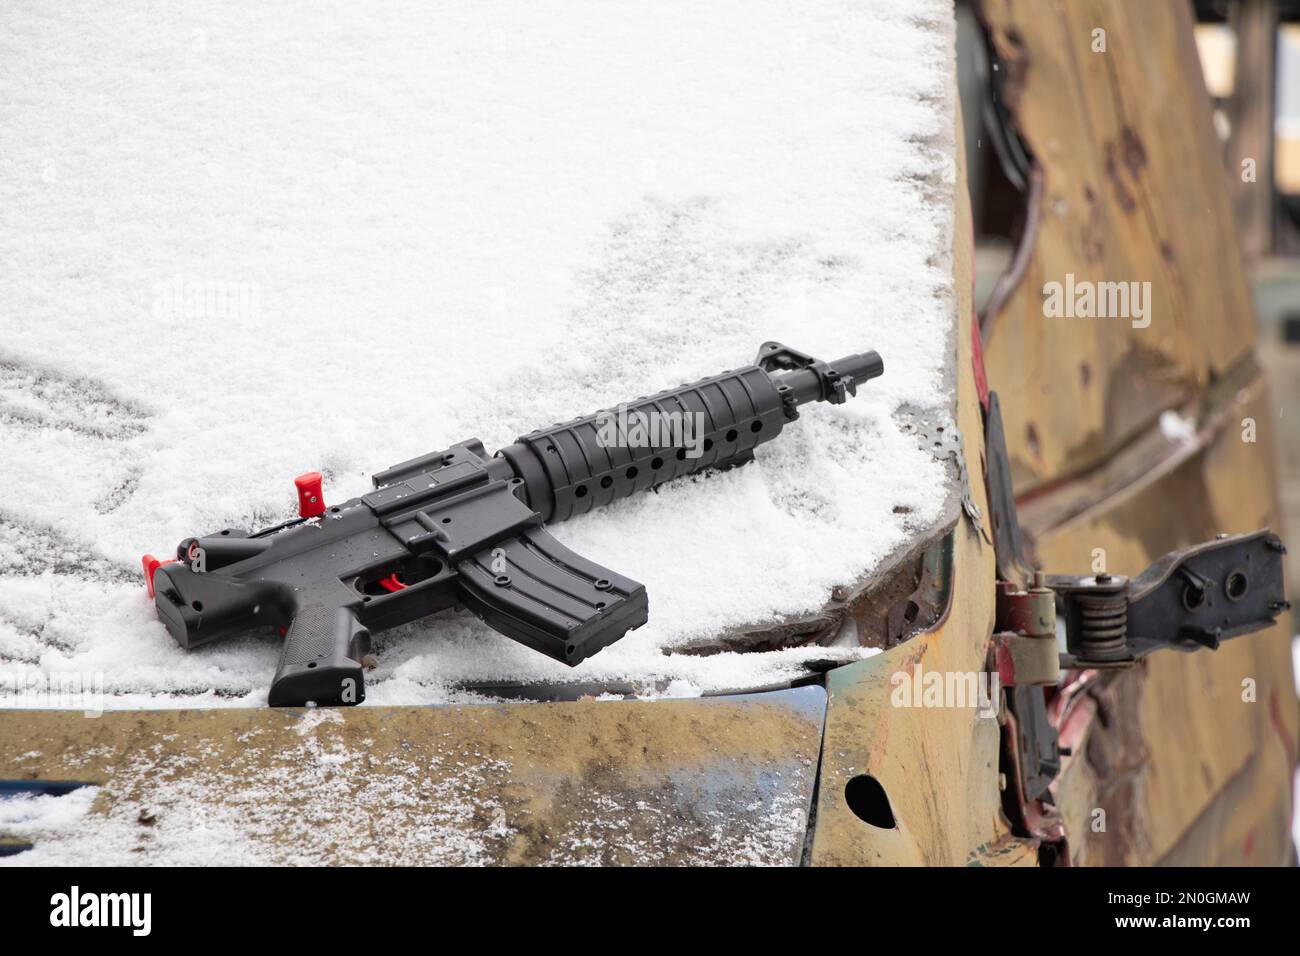 Una pistola di plastica per bambini si trova su un veicolo militare naufragato per strada in Ucraina in inverno, la guerra in Ucraina Foto Stock